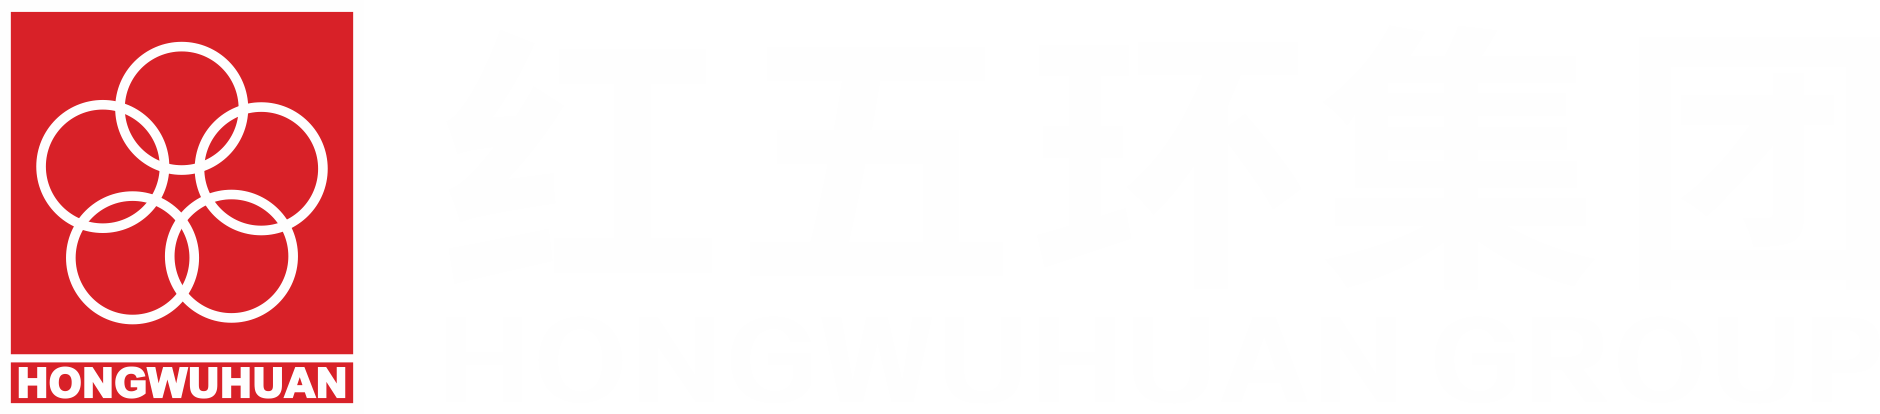 亚博yabo最新官网登录集团logo.png